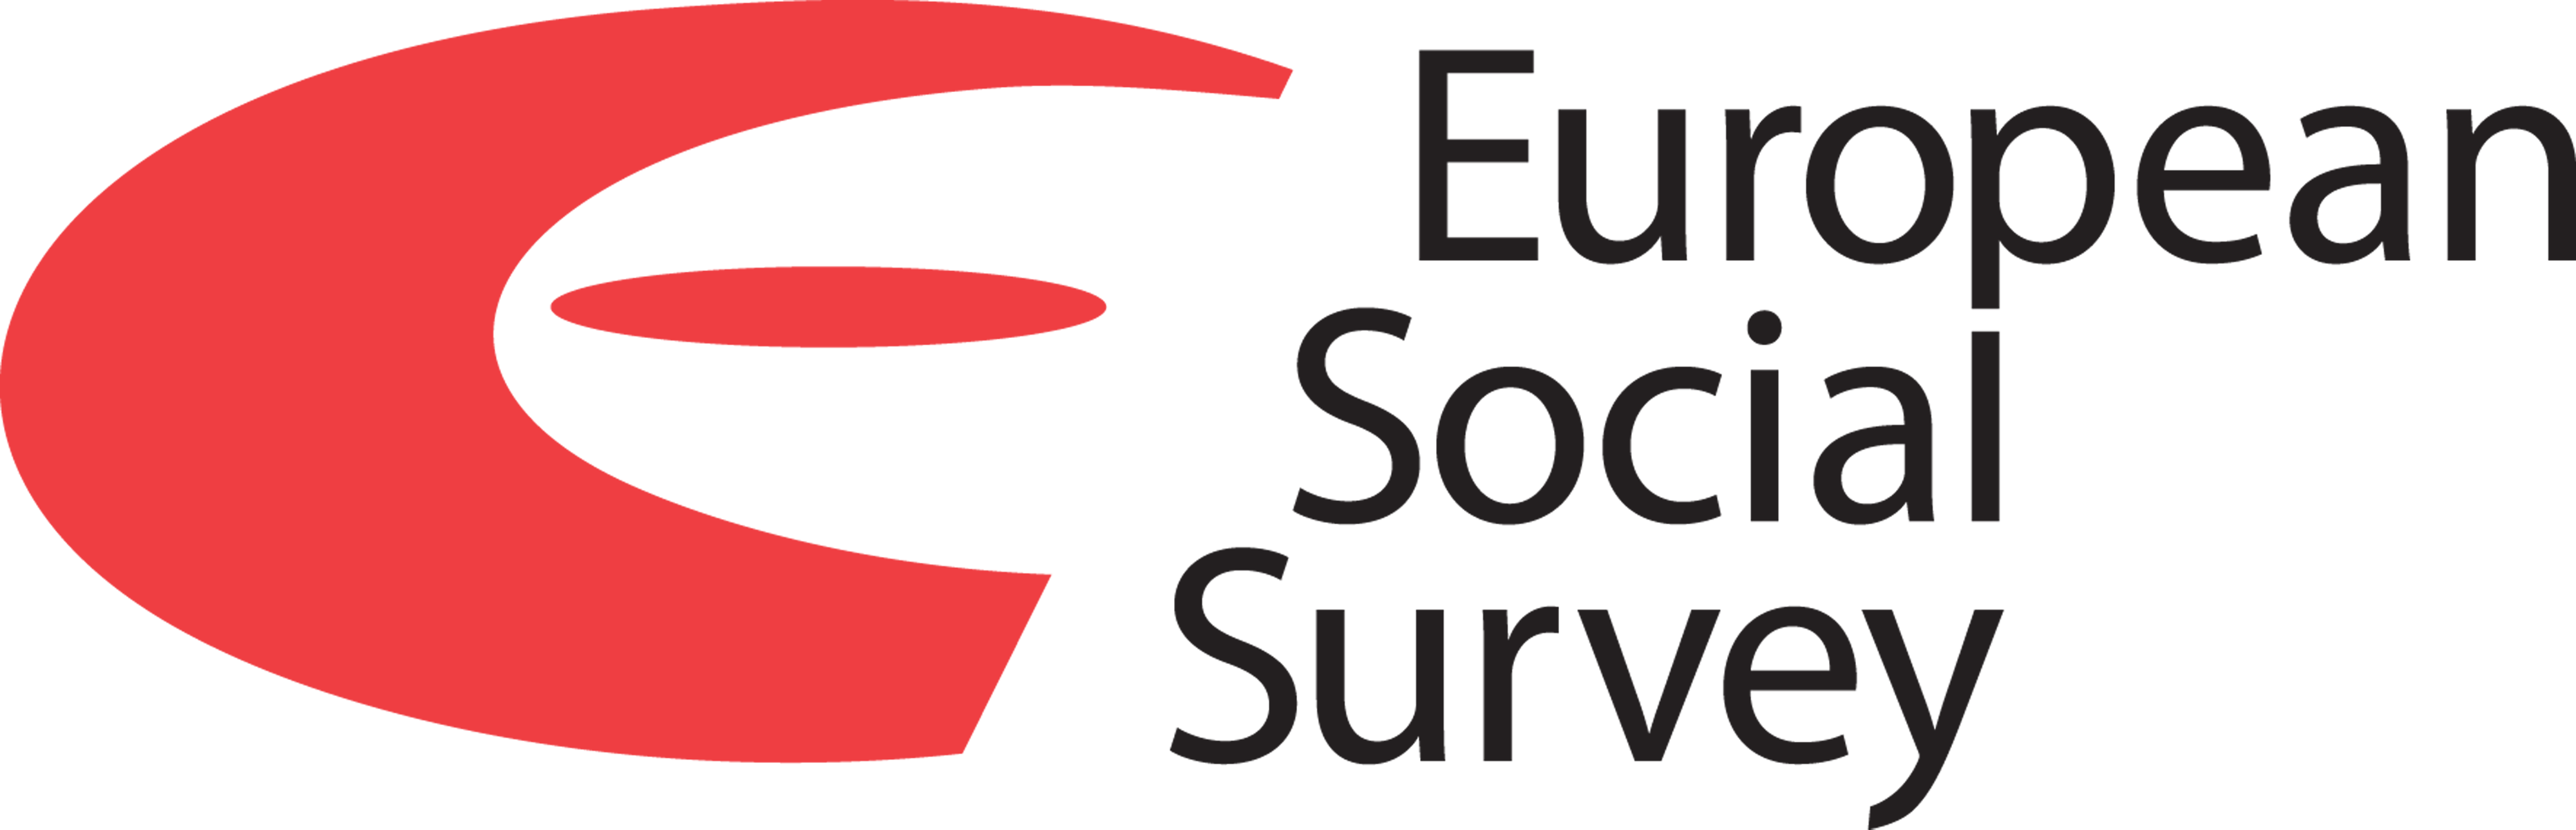 European Social Survey Round 11 in Greece